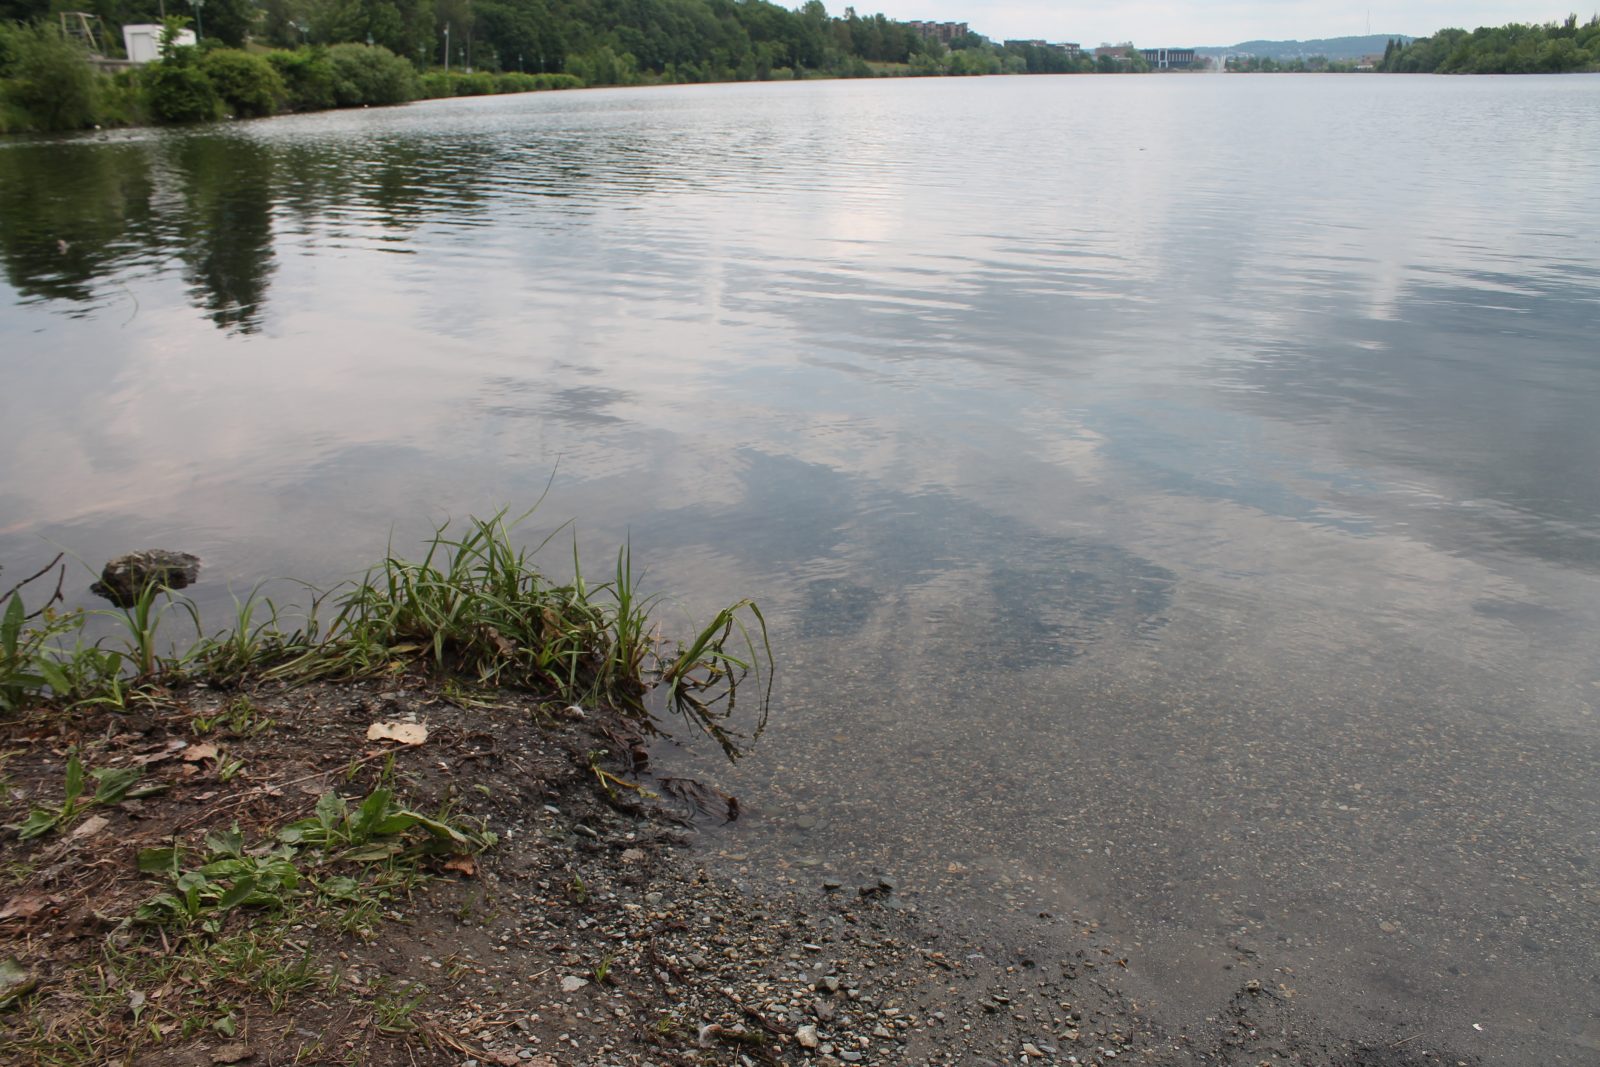 Lac des Nations water raises public health concerns